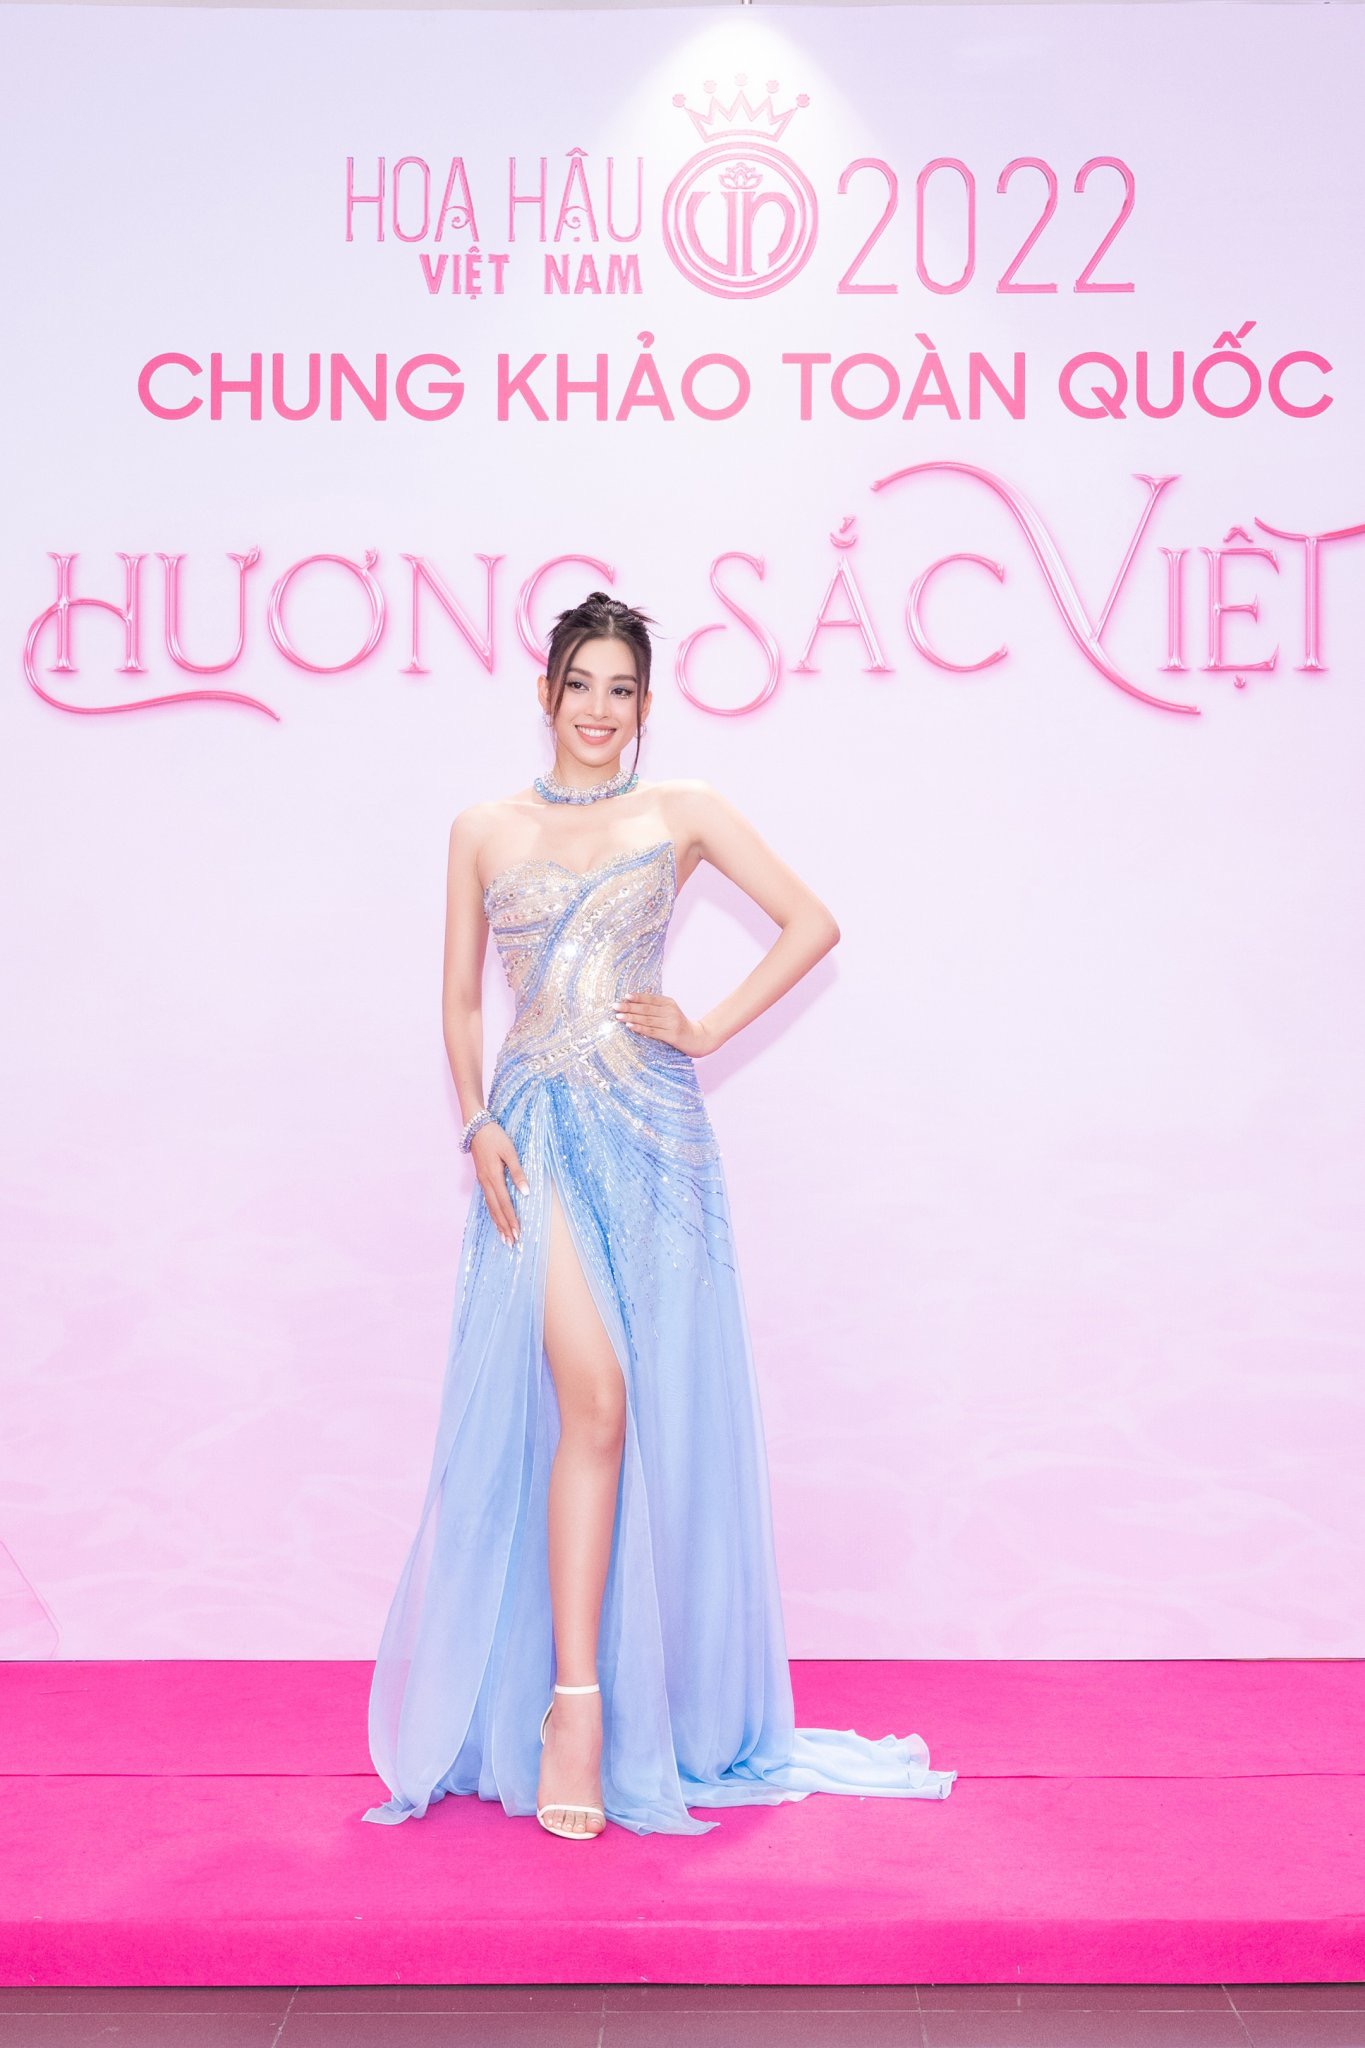 Thảm đỏ Chung khảo Hoa hậu Việt Nam 2022: Đỗ Hà - Bảo Ngọc đọ chân dài, Thuỳ Tiên xinh như nữ thần - Ảnh 6.